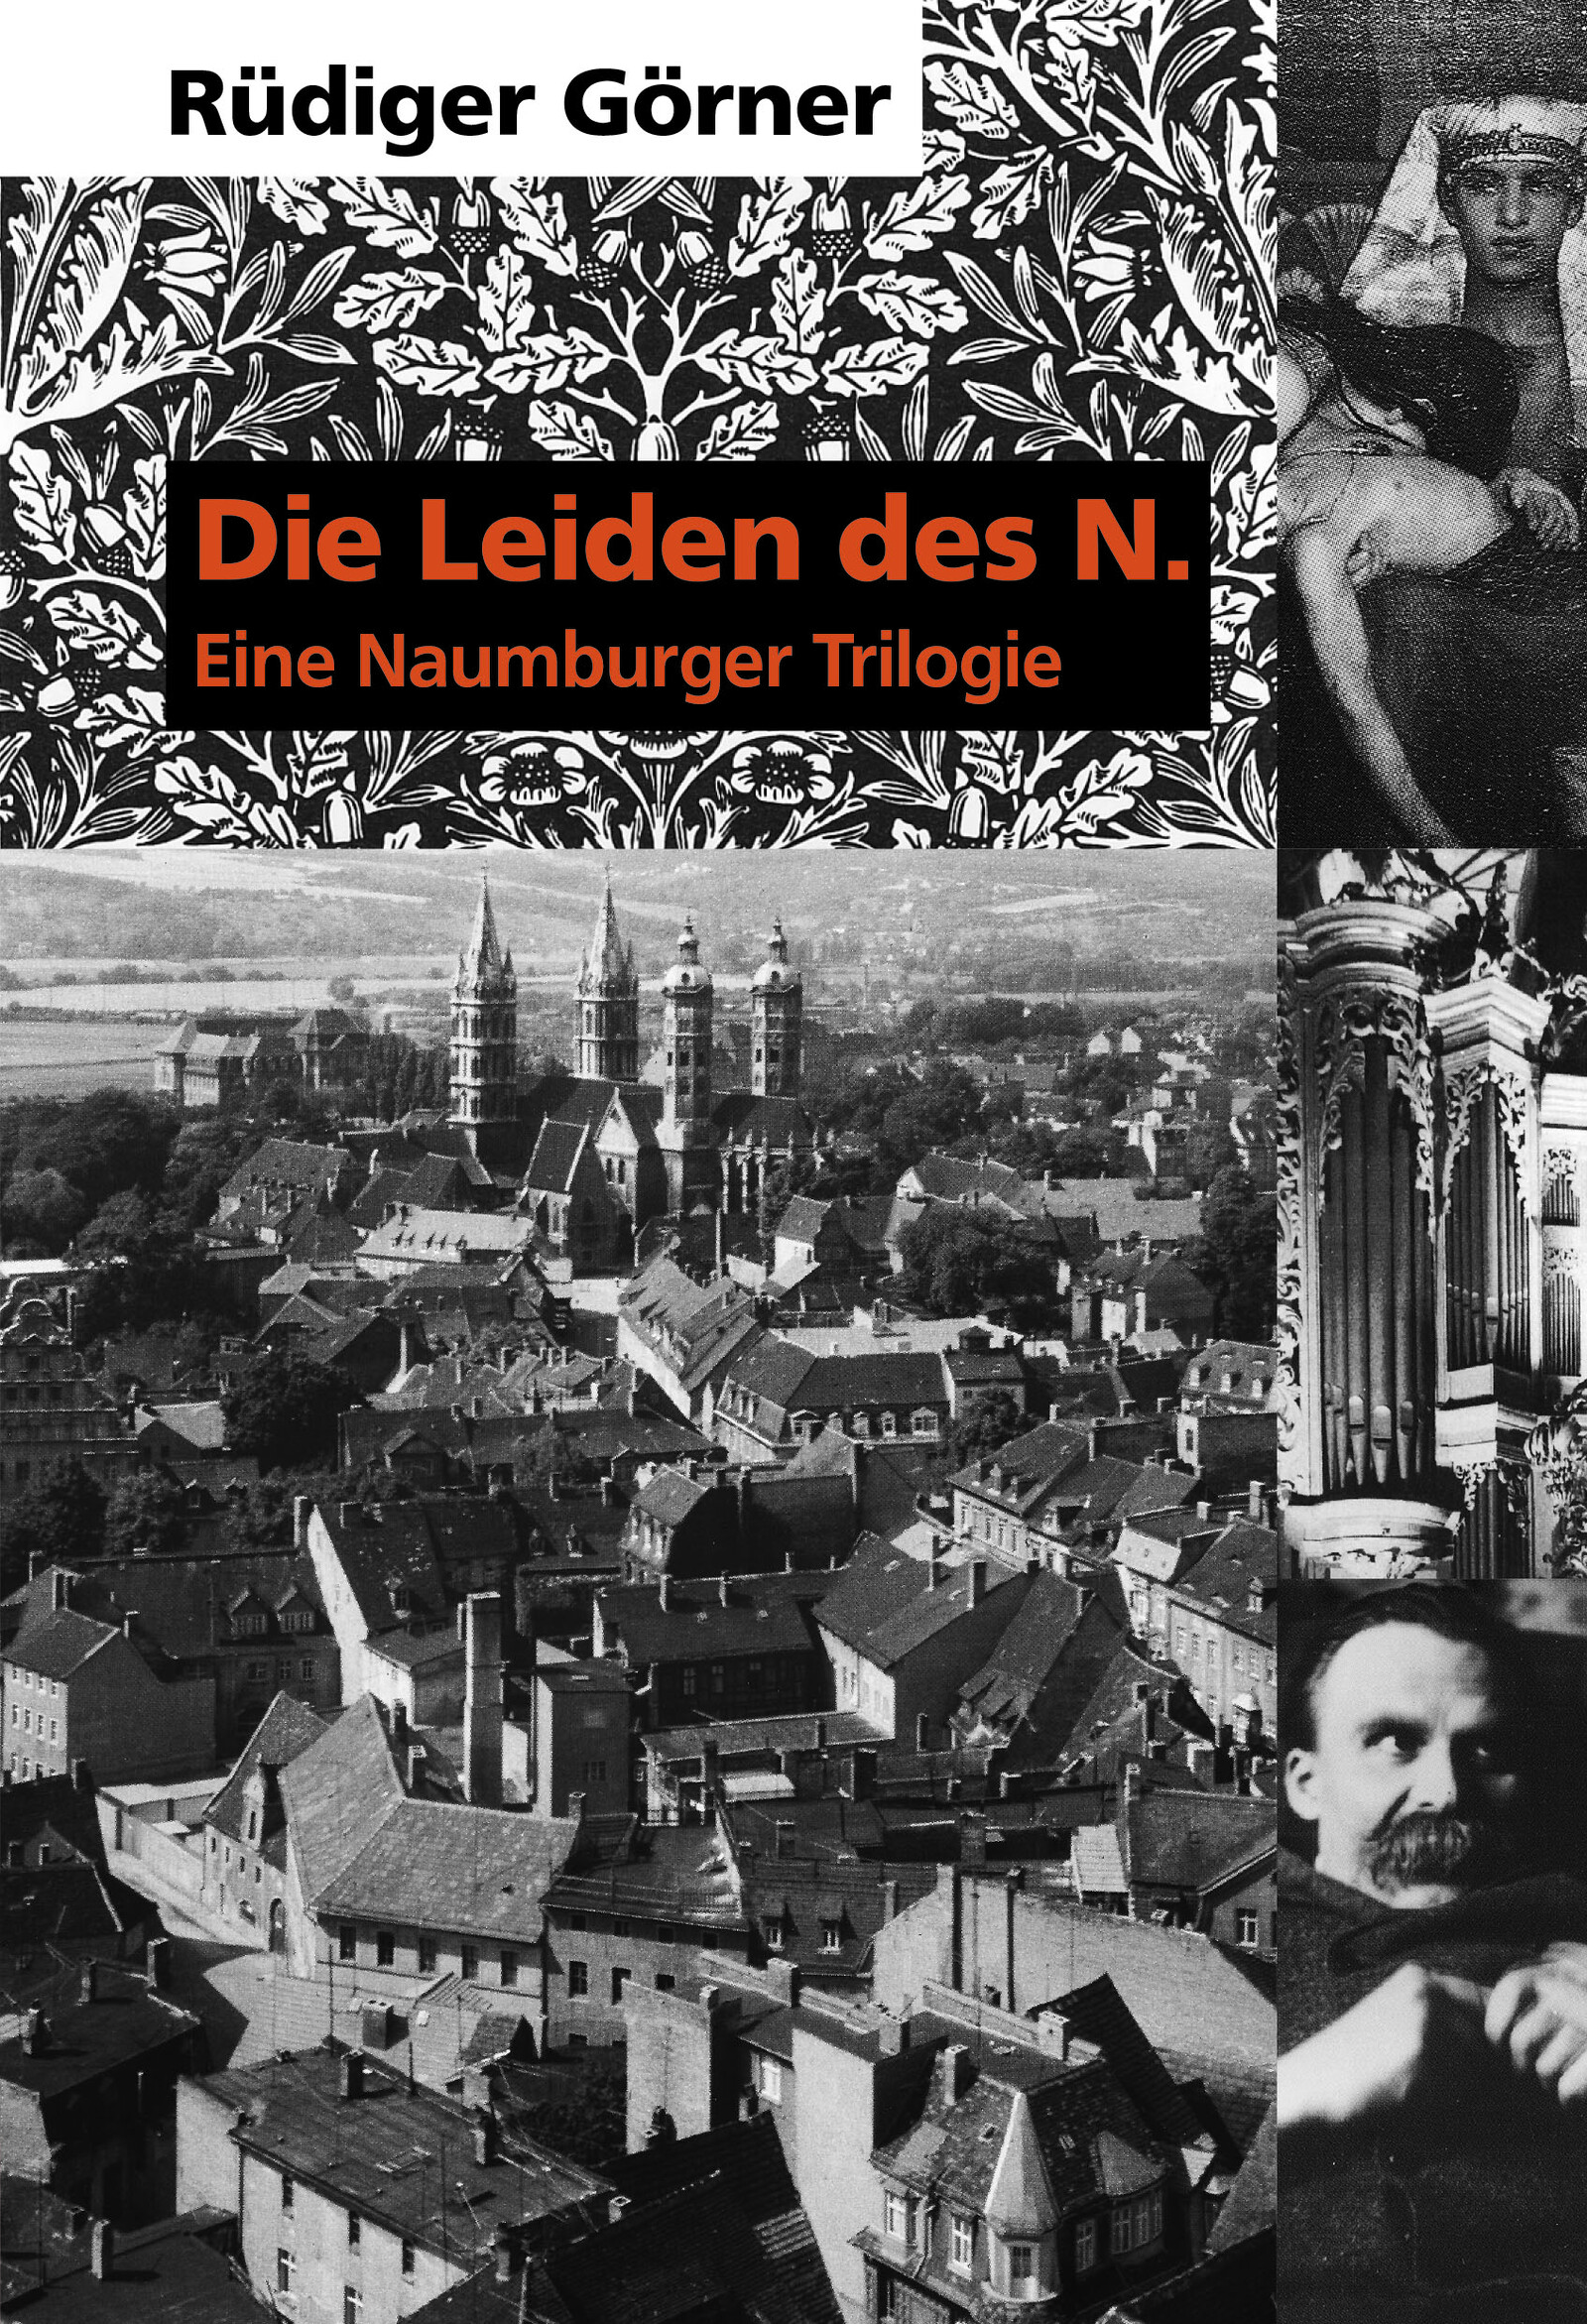 Trilogie: Lesung mit Musik und Illustrationen am 10.3., Mironde Verlag, 2016.